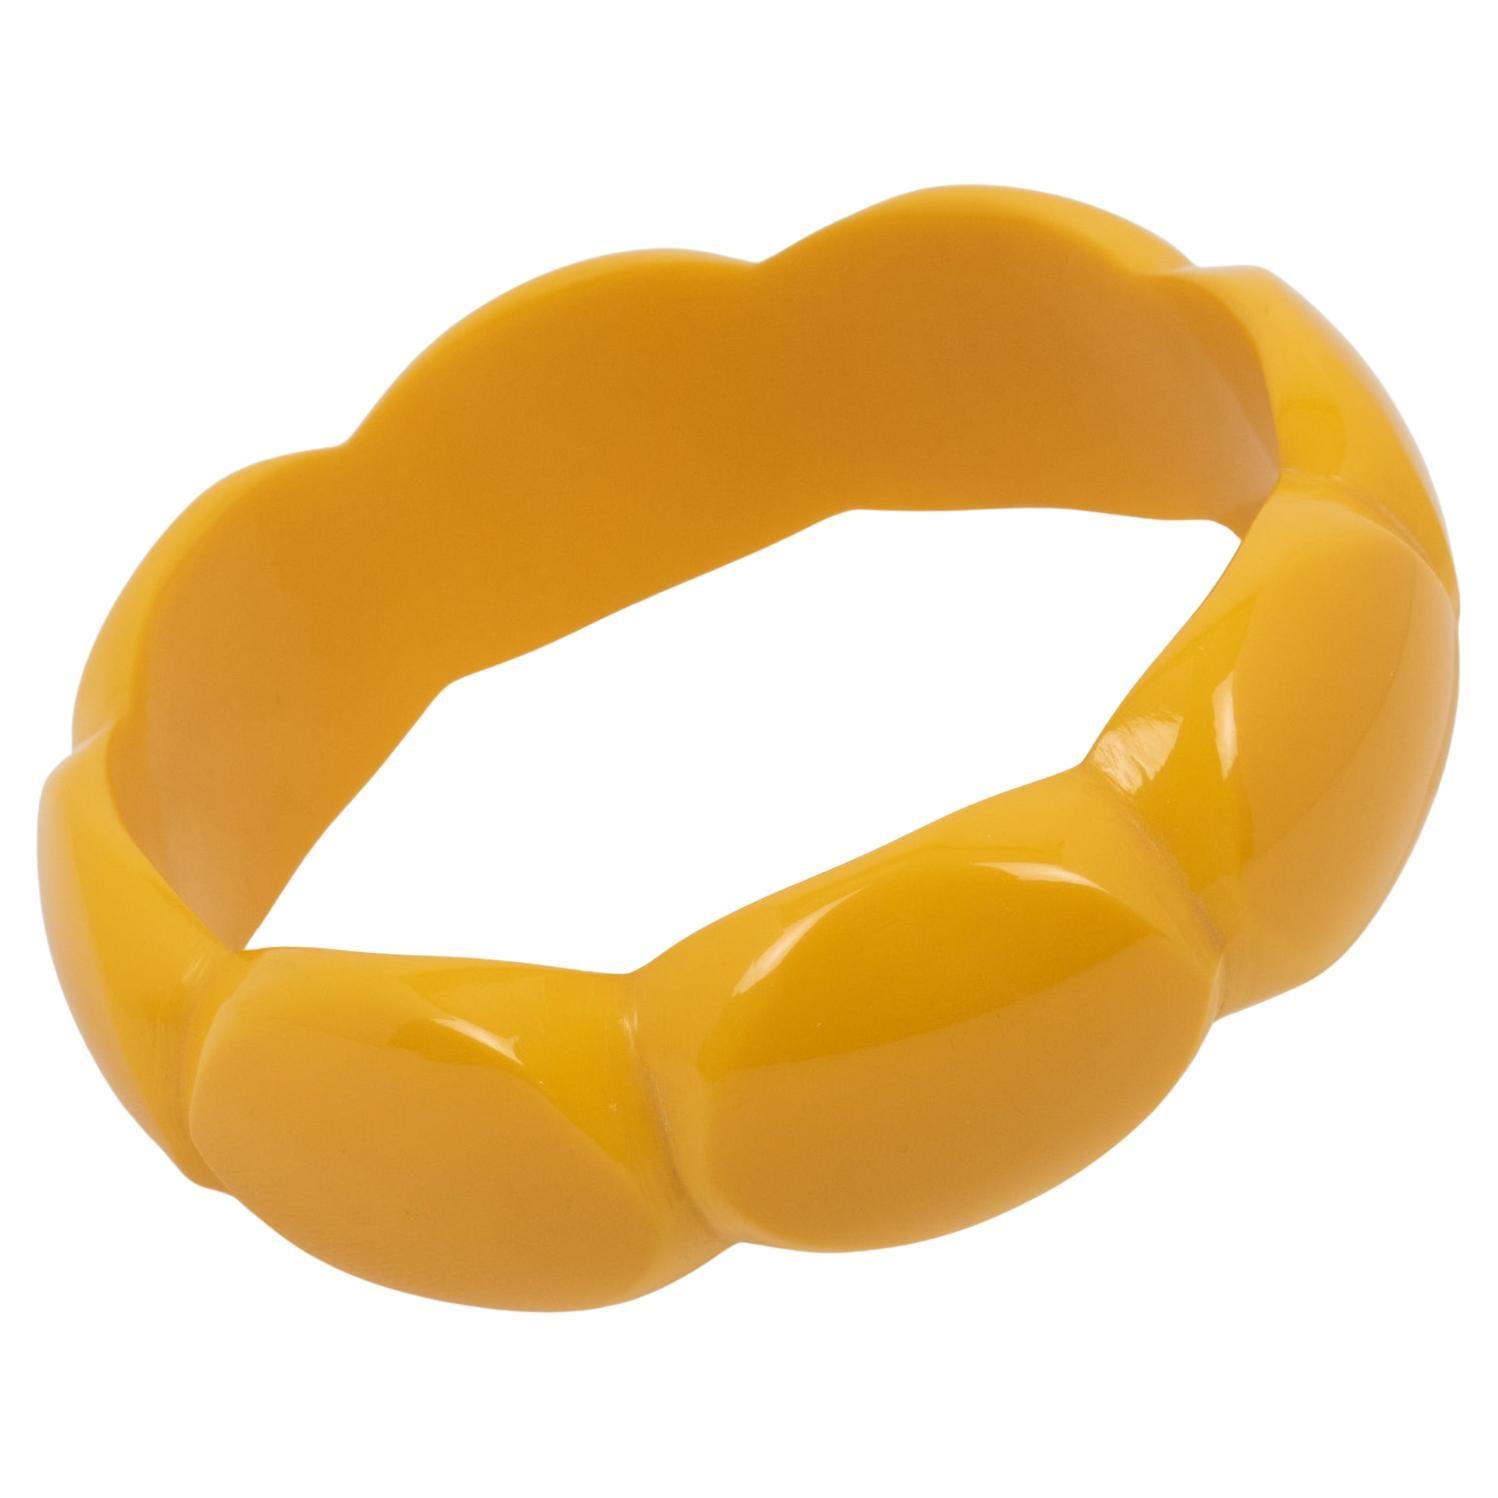 Bakelite Carved Bracelet Bangle Yellow Creamed Corn